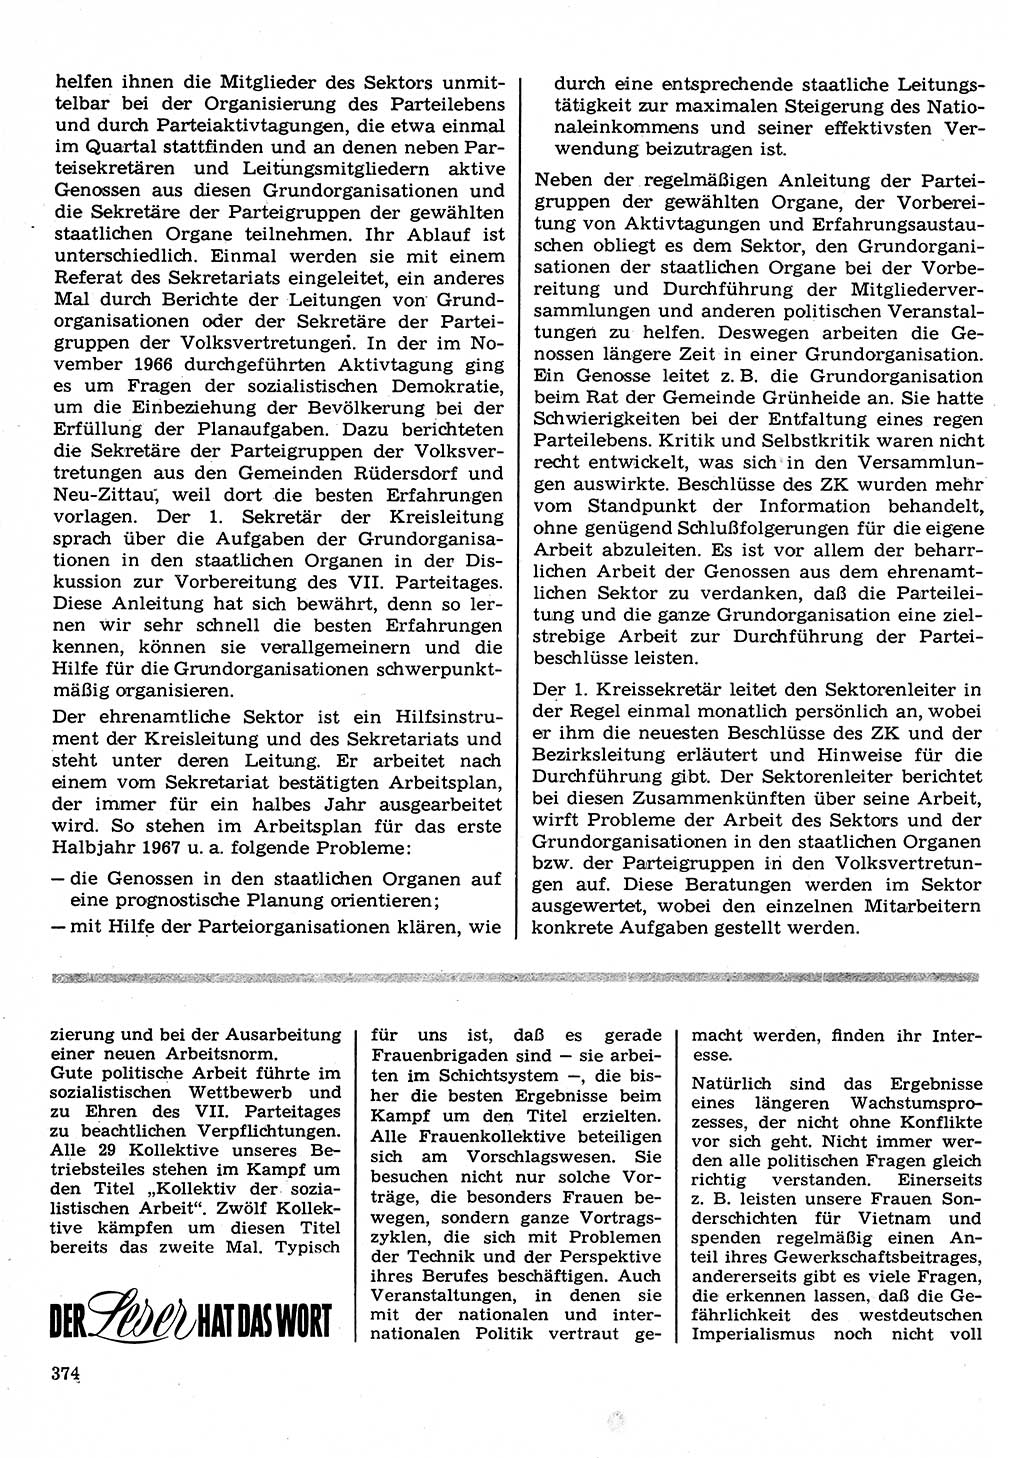 Neuer Weg (NW), Organ des Zentralkomitees (ZK) der SED (Sozialistische Einheitspartei Deutschlands) für Fragen des Parteilebens, 22. Jahrgang [Deutsche Demokratische Republik (DDR)] 1967, Seite 374 (NW ZK SED DDR 1967, S. 374)